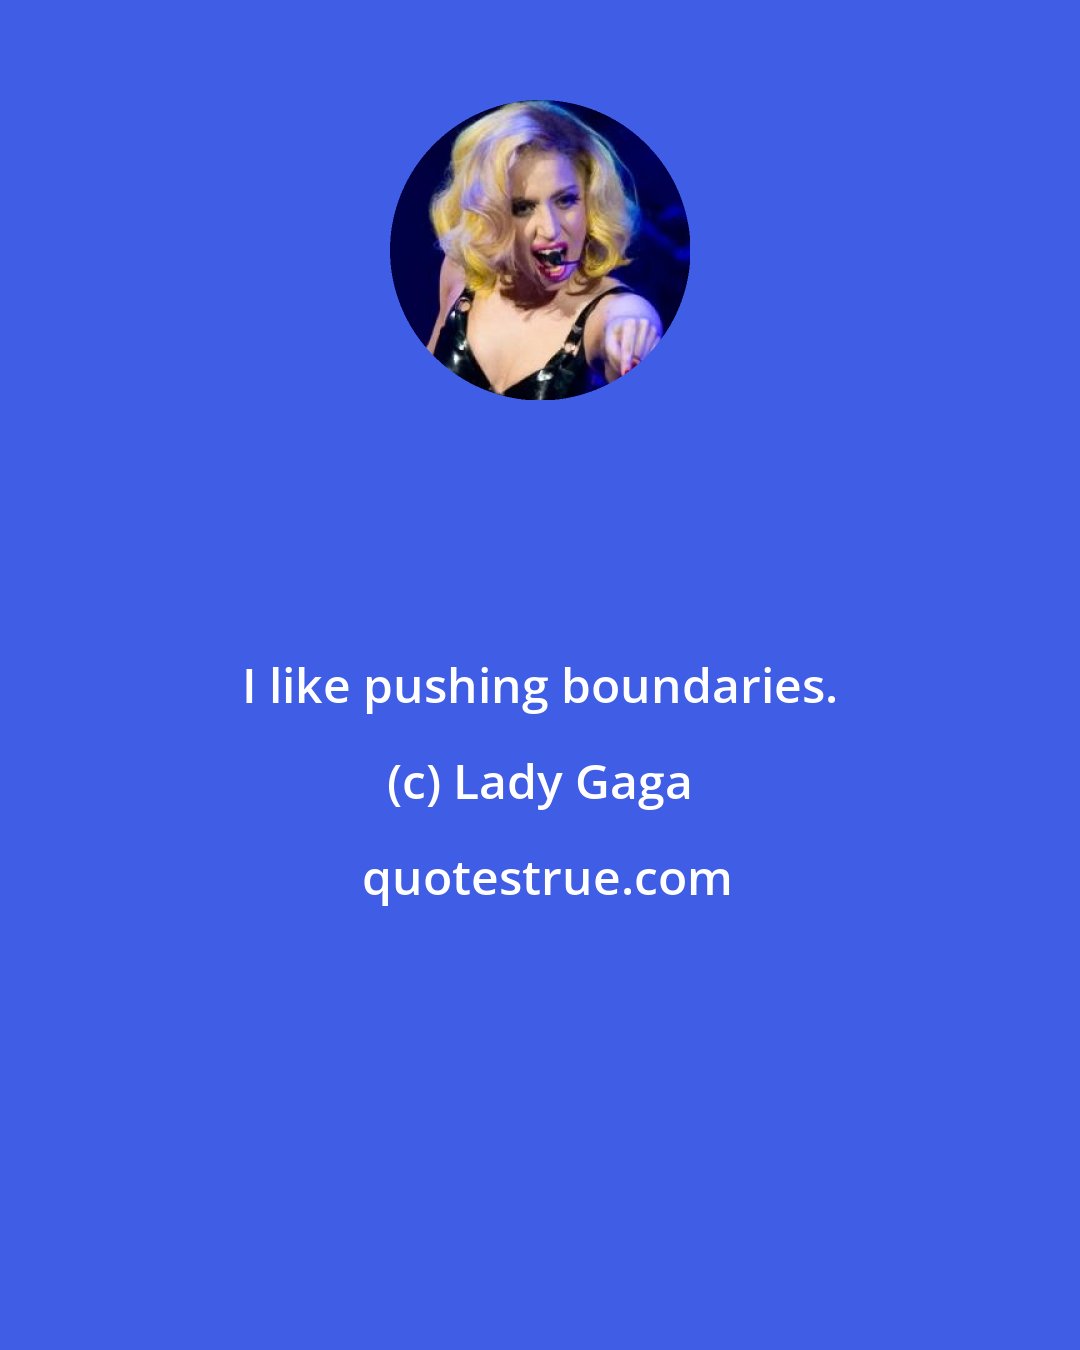 Lady Gaga: I like pushing boundaries.